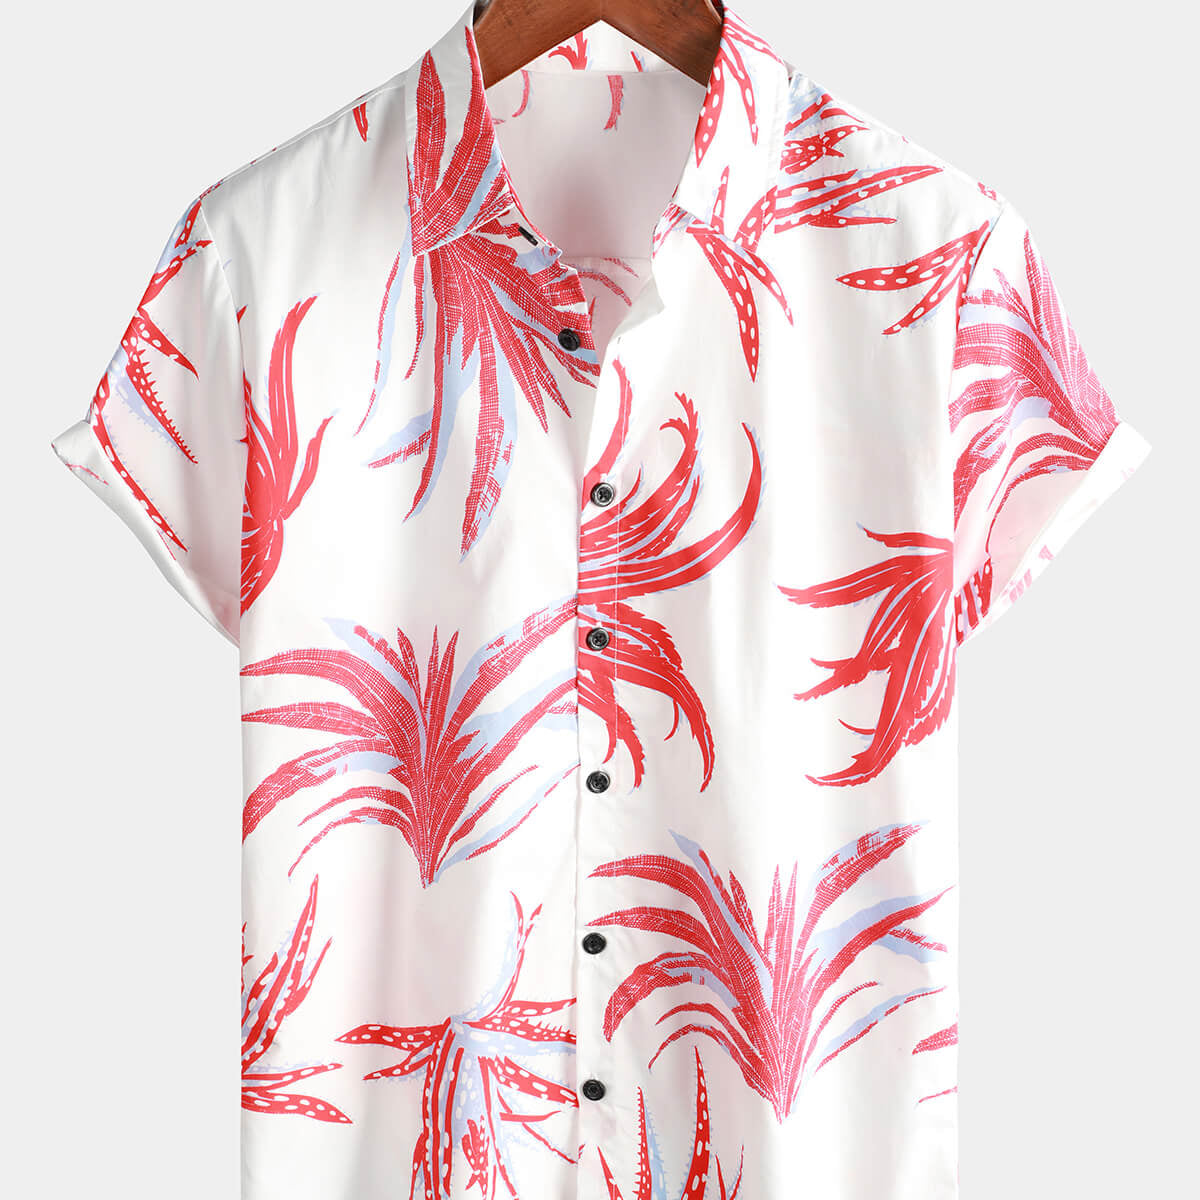 Camisa de manga corta para vacaciones de plantas de verano, informal, 100% algodón, con botones florales para hombre